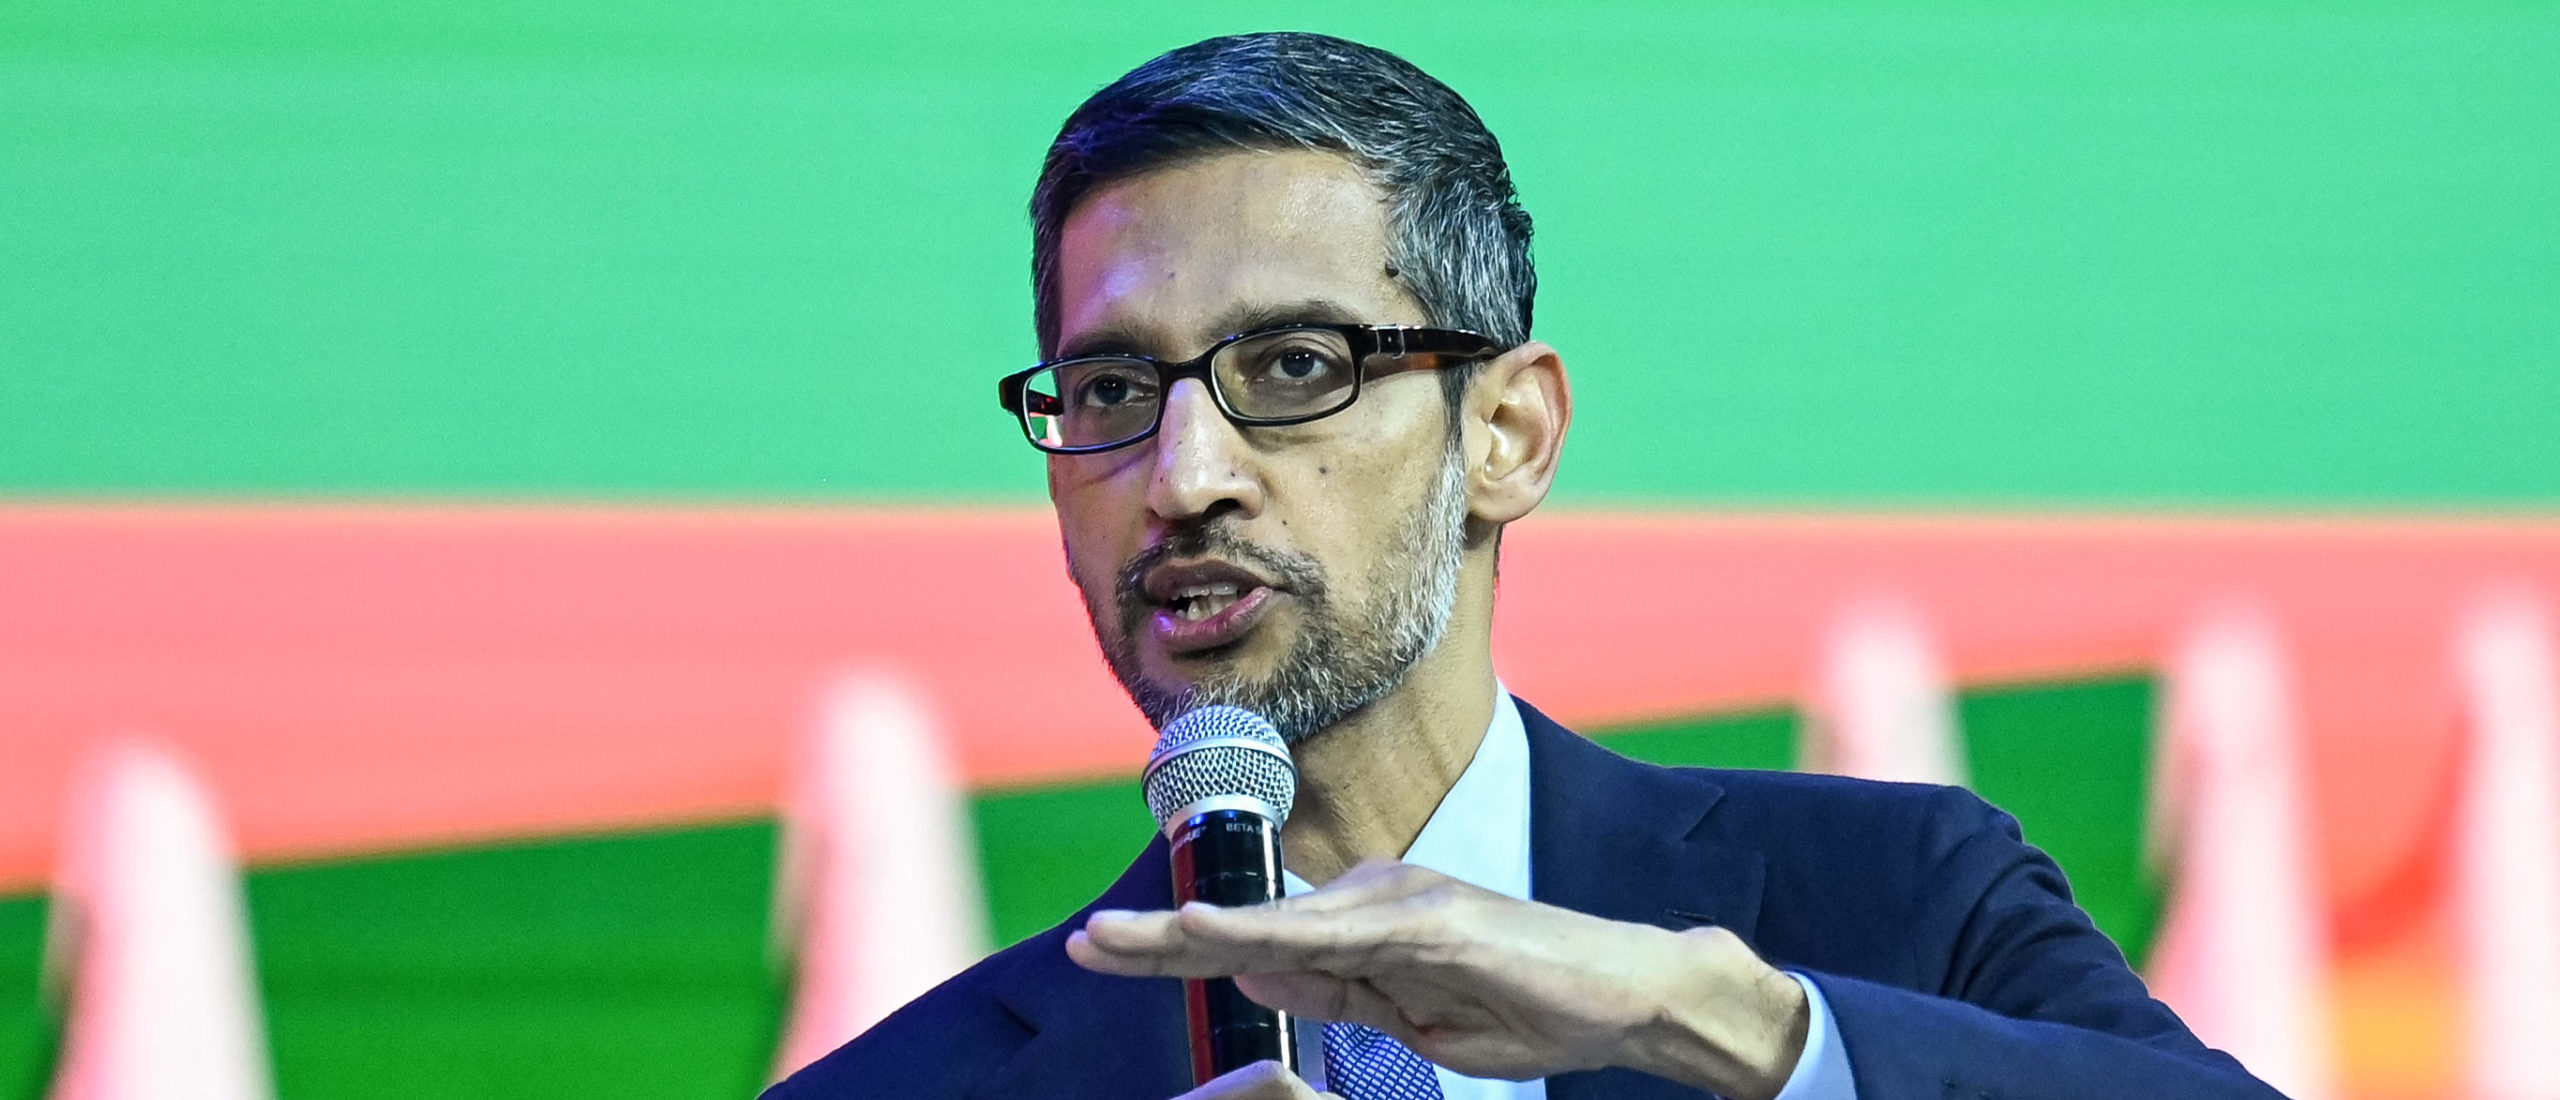 Sundar Pichai, CEO of Google Inc. speaks during an event in New Delhi on December 19, 2022.